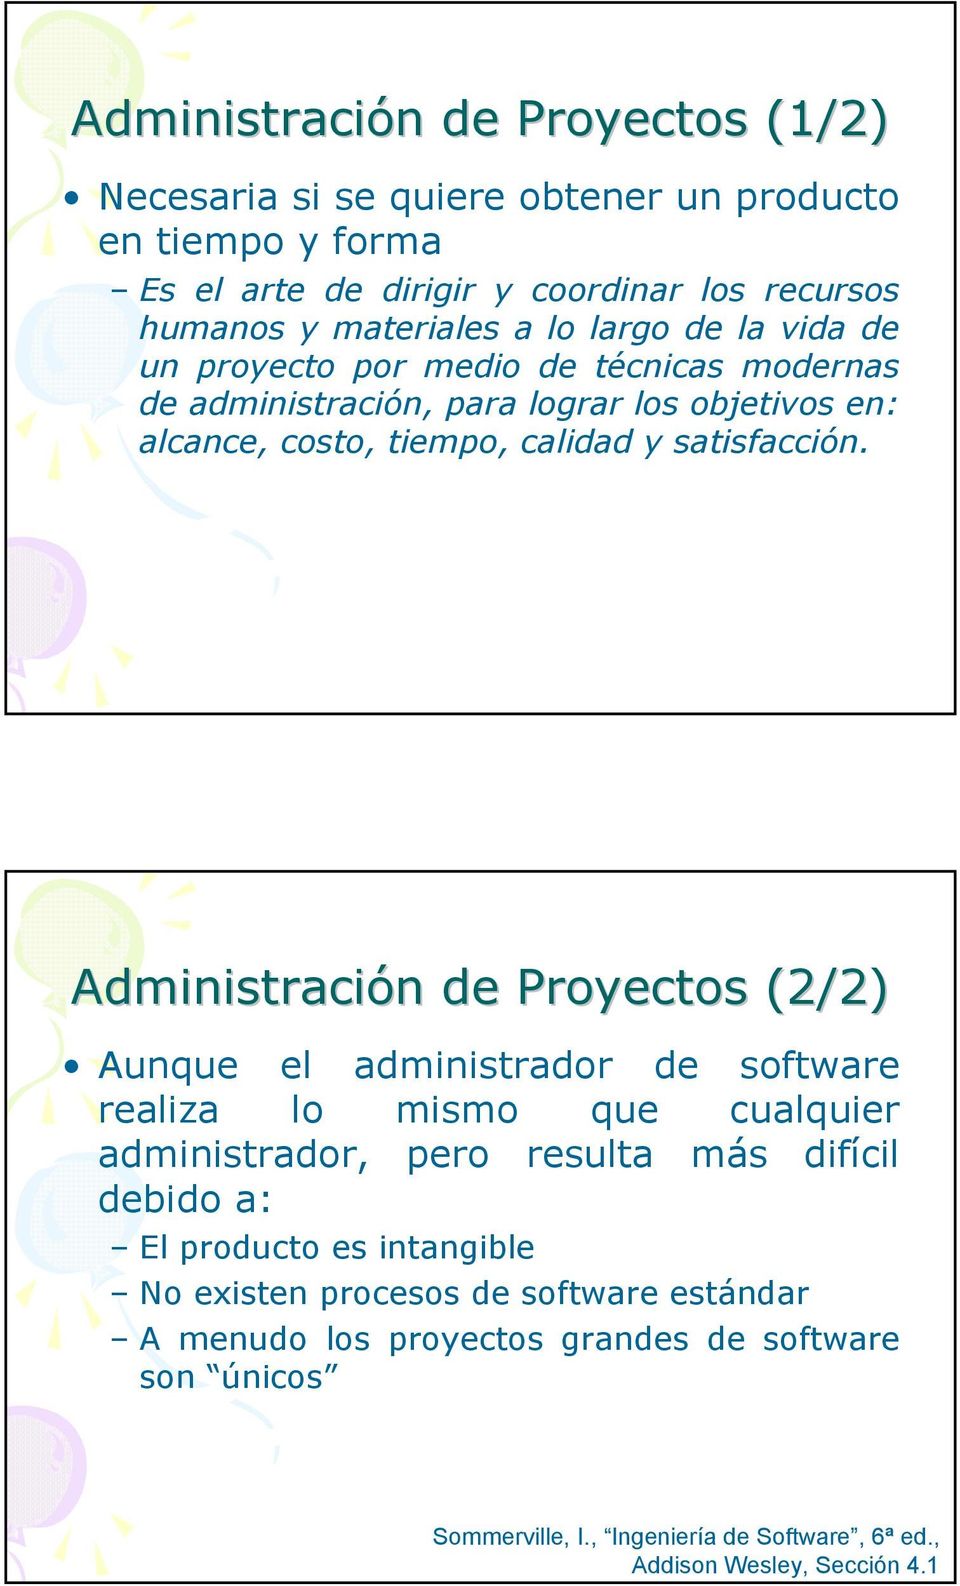 Administración n de Proyectos (2/2) Aunque el administrador de software realiza lo mismo que cualquier administrador, pero resulta más difícil debido a: El producto es